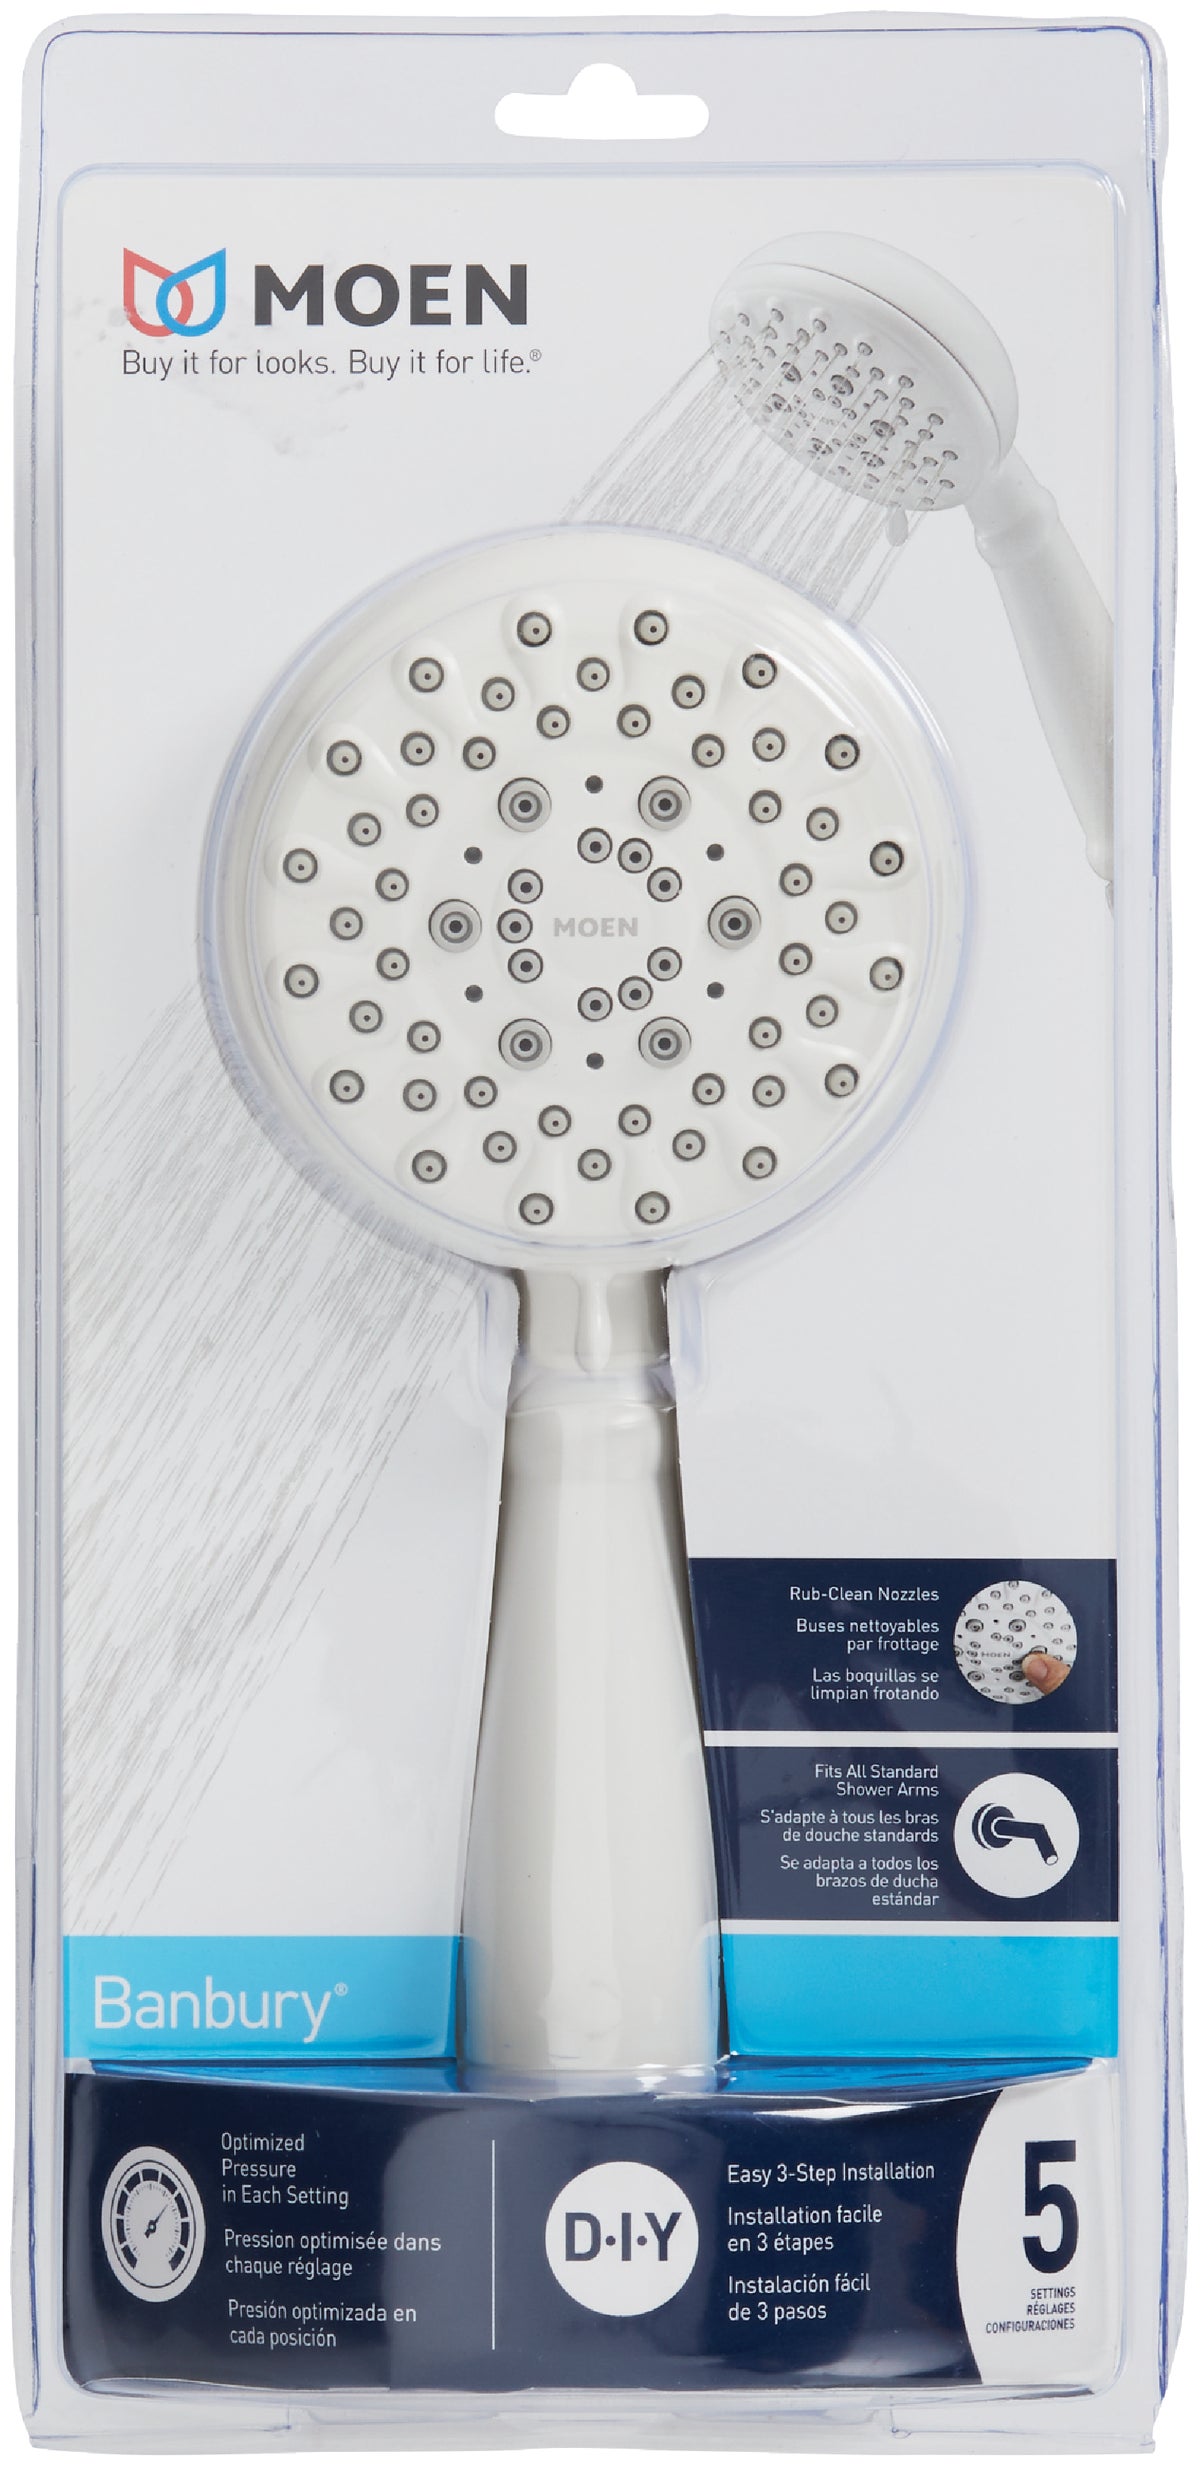 Buy Moen Banbury 5-Spray 1.75 GPM Handheld Shower